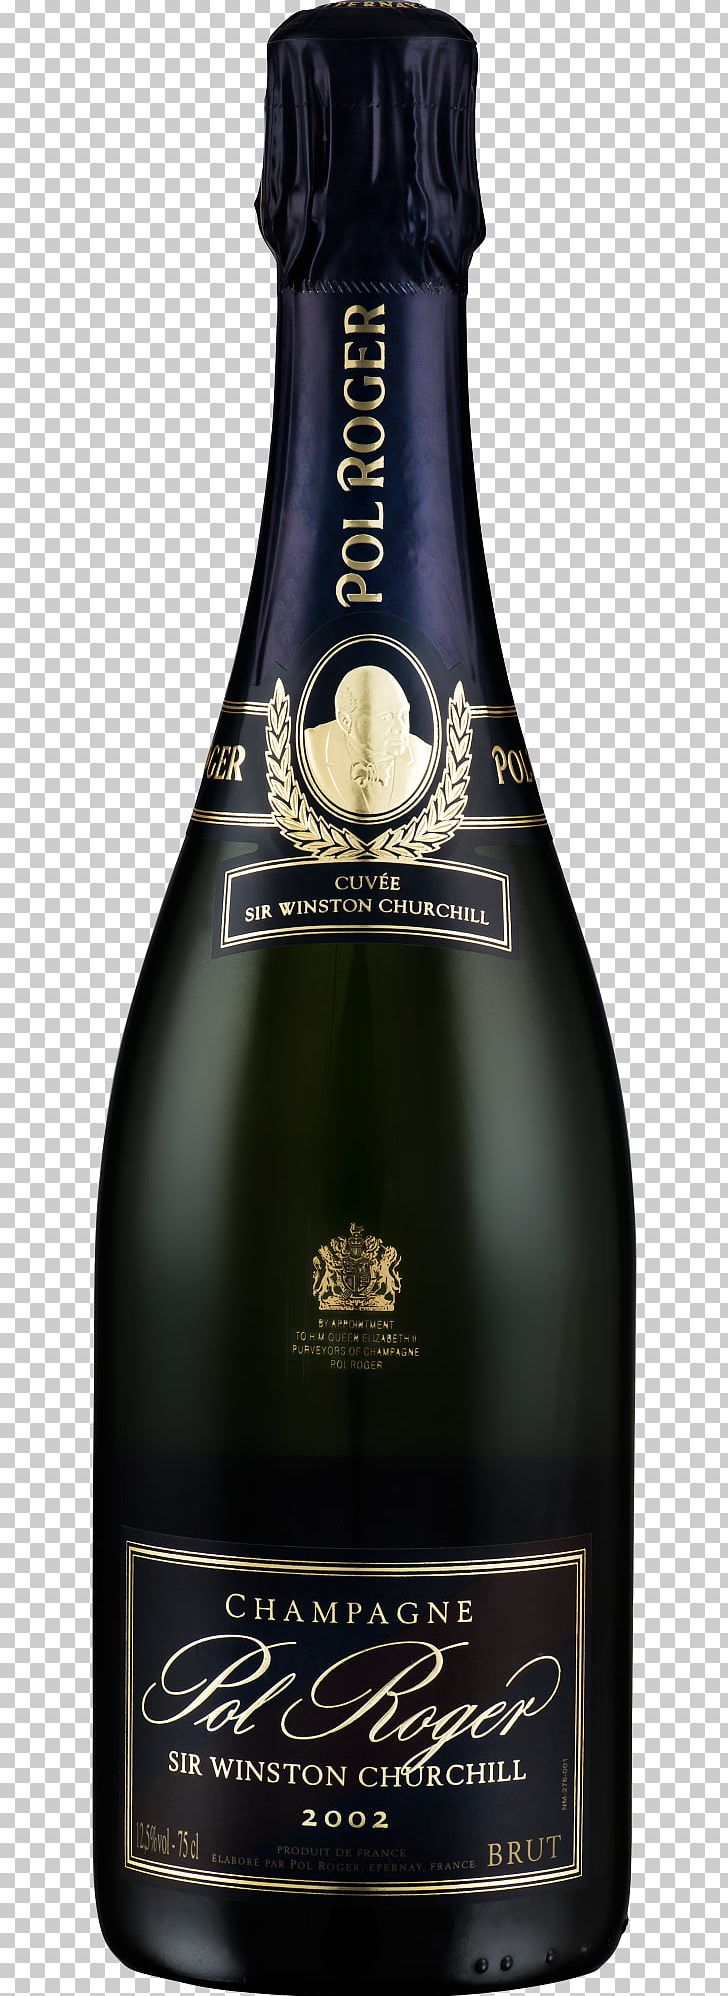 Champagne Wine Pol Roger Liqueur Glass Bottle PNG, Clipart, Alcoholic Beverage, Bottle, Champagne, Distilled Beverage, Drink Free PNG Download